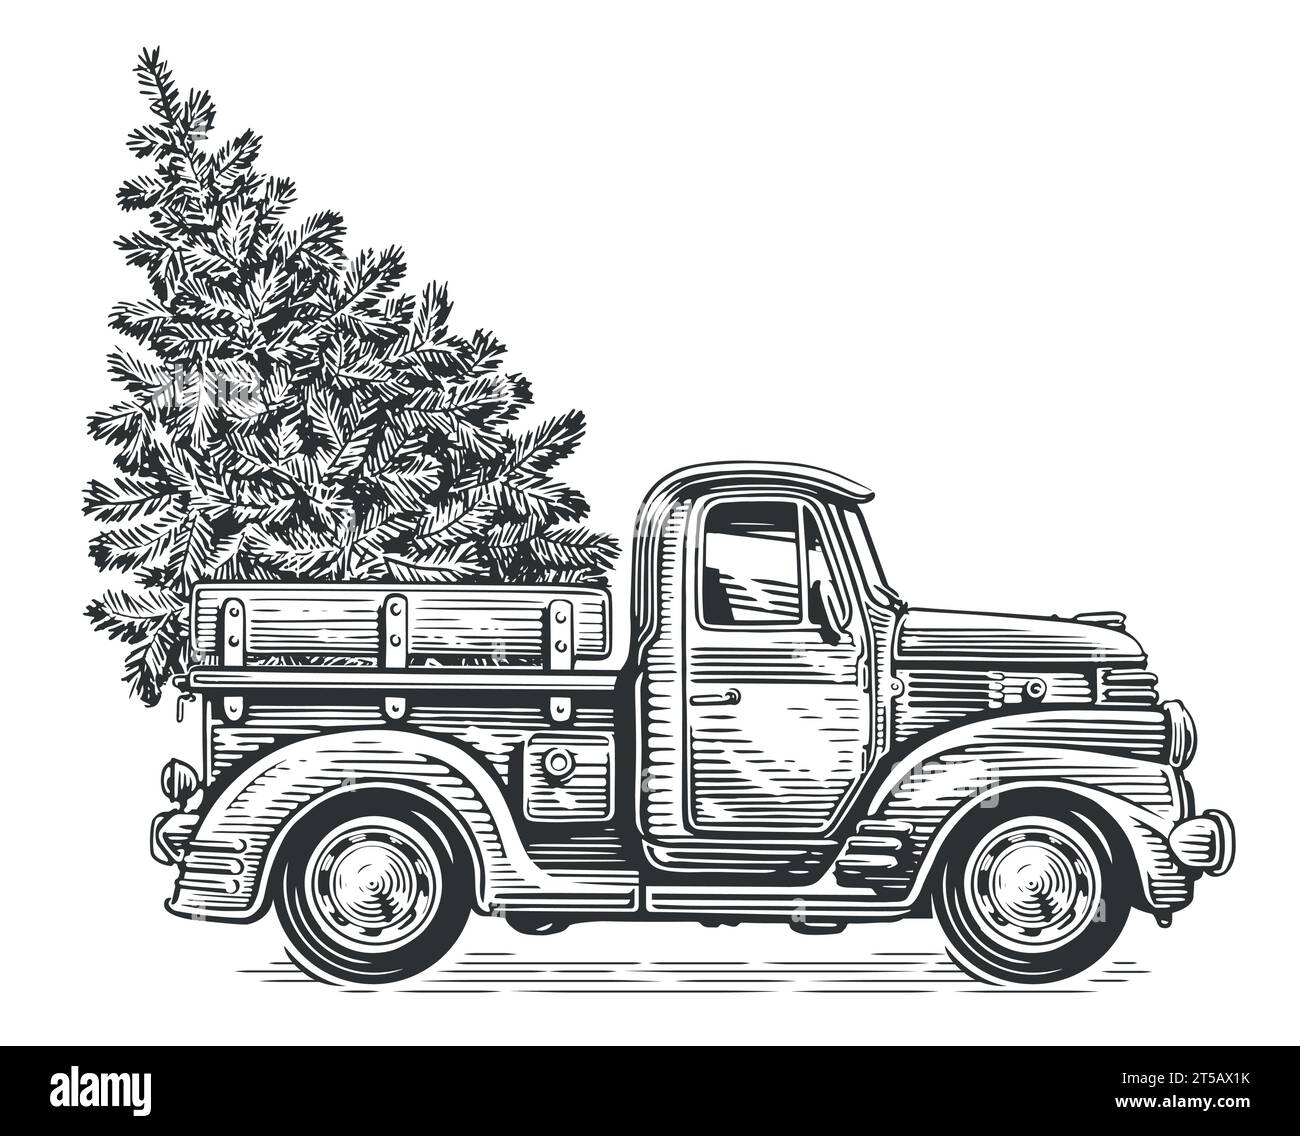 Camión retro de Navidad con árbol de pino en estilo de boceto. Dibujado a mano ilustración vectorial vintage Ilustración del Vector